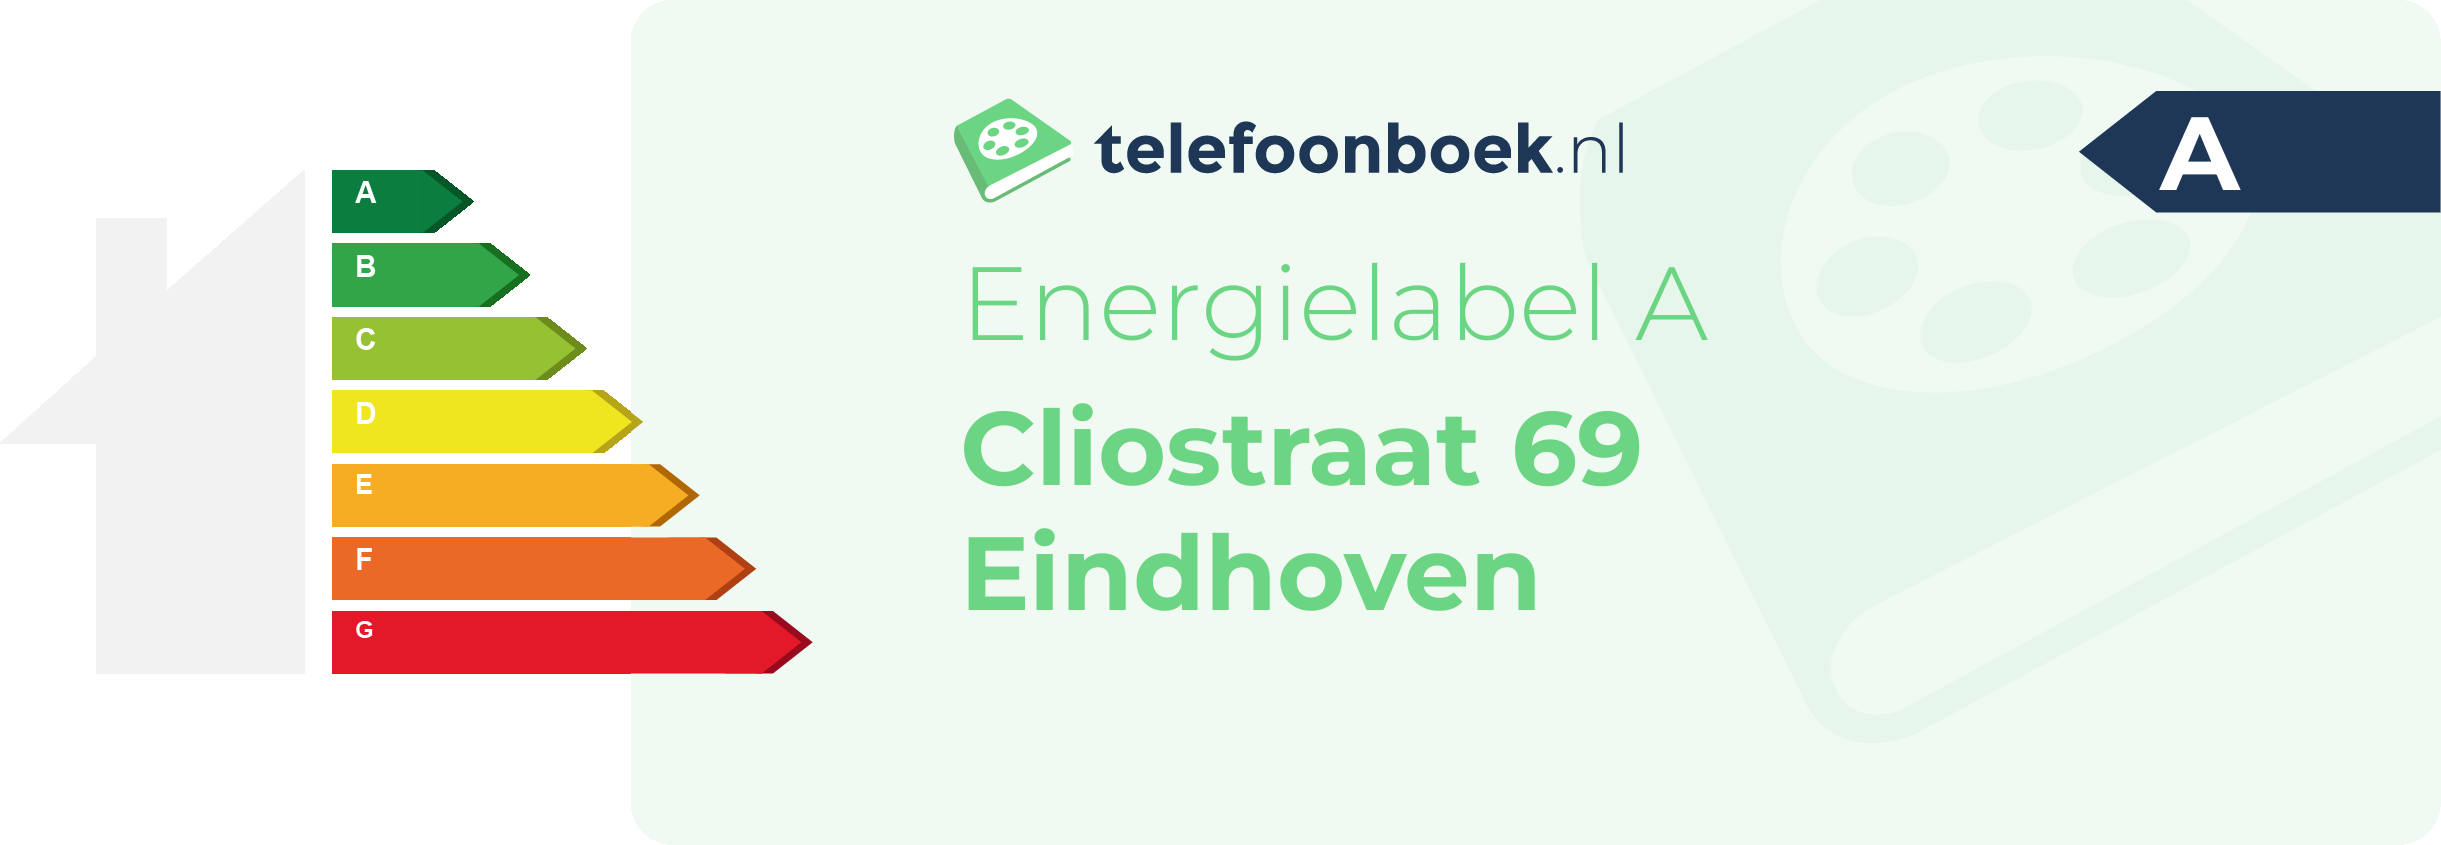 Energielabel Cliostraat 69 Eindhoven